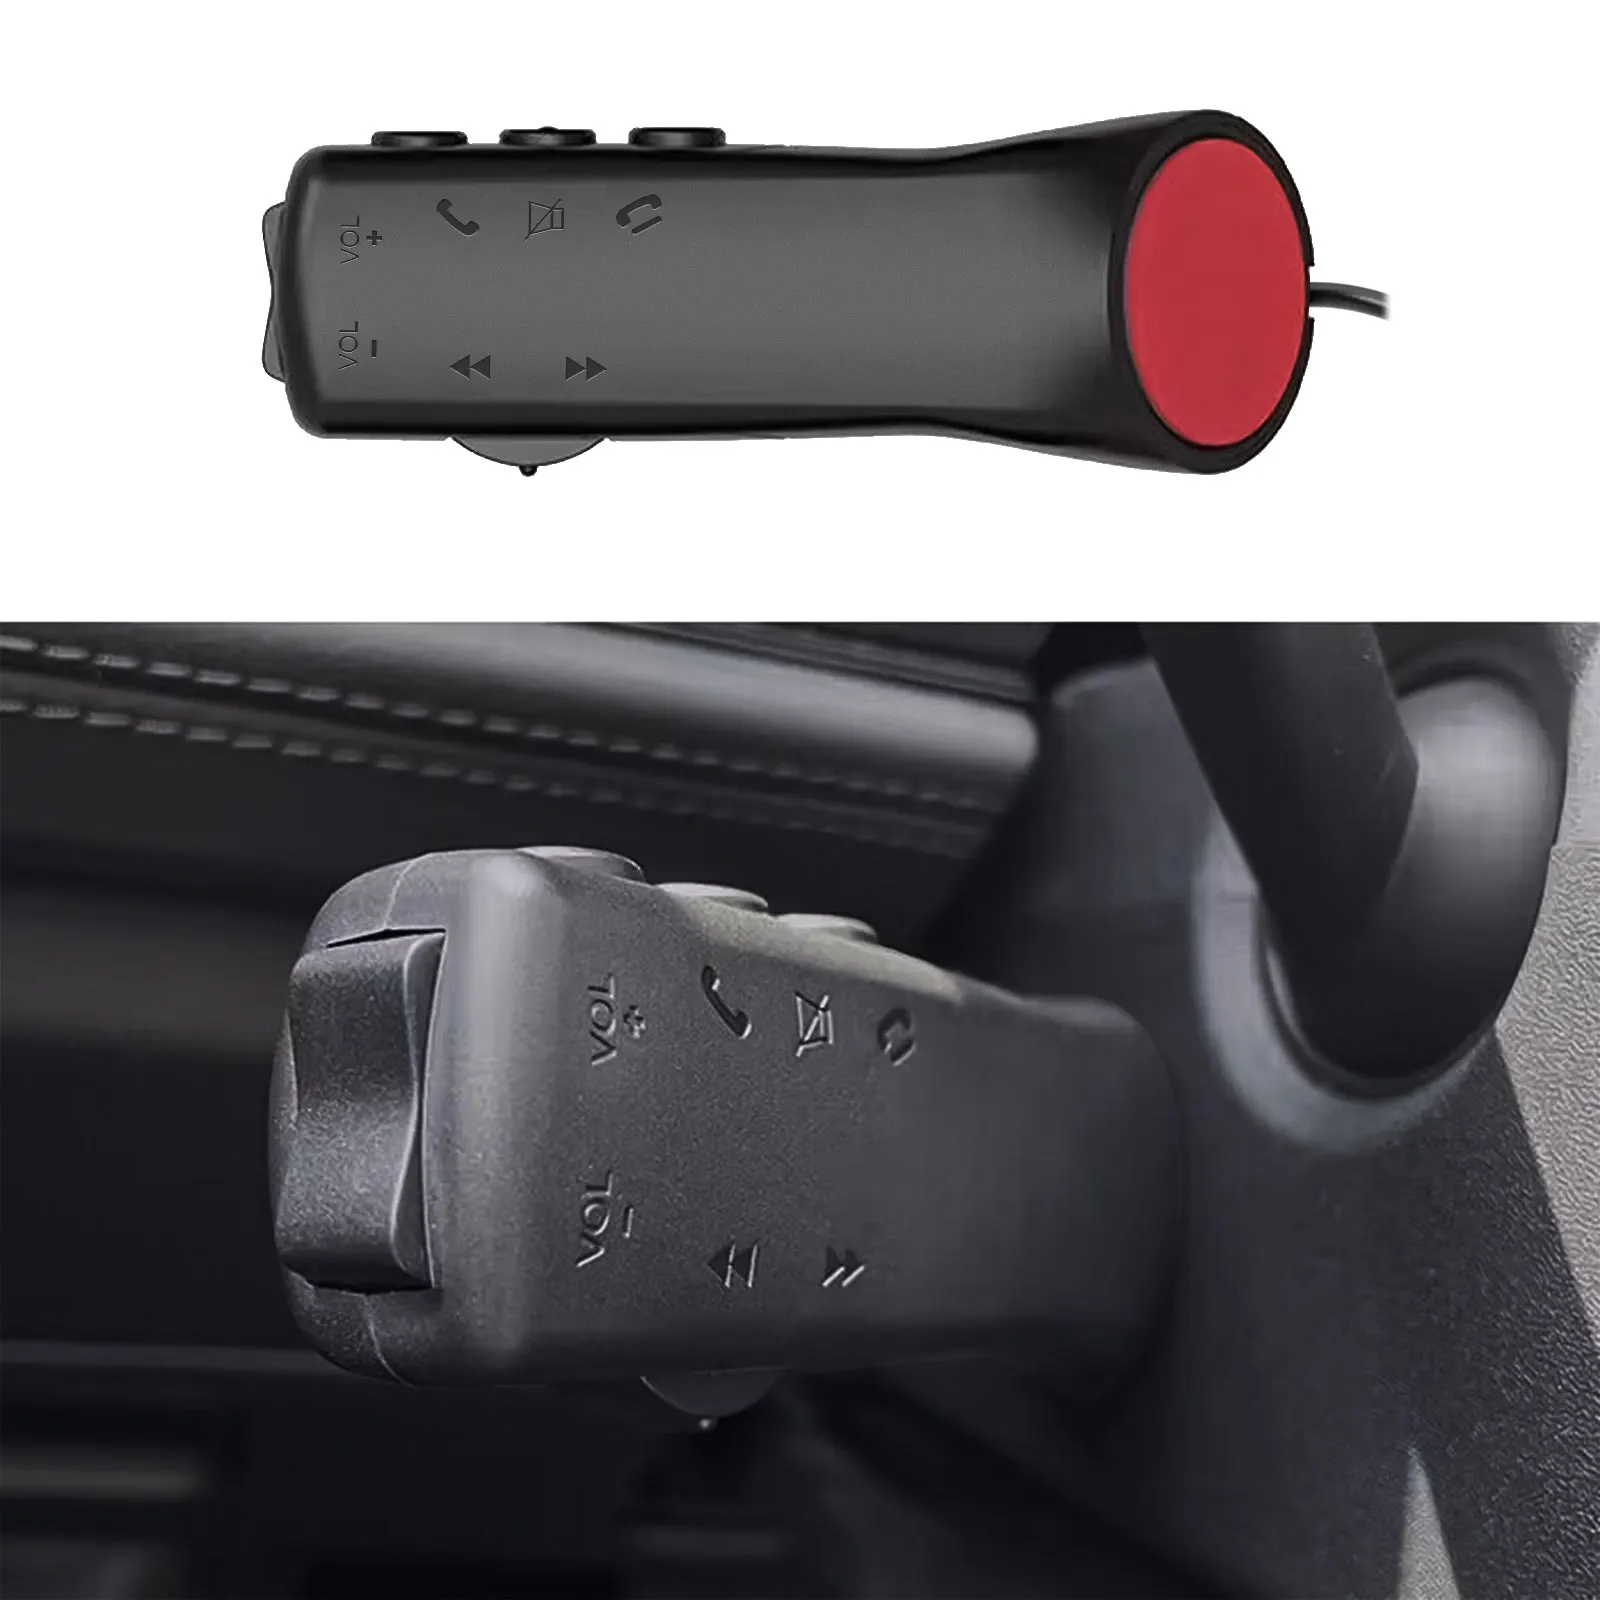 Car Steering Wheel Control Button 7 Key for Car Radio DVD GPS Multimedia - $14.03